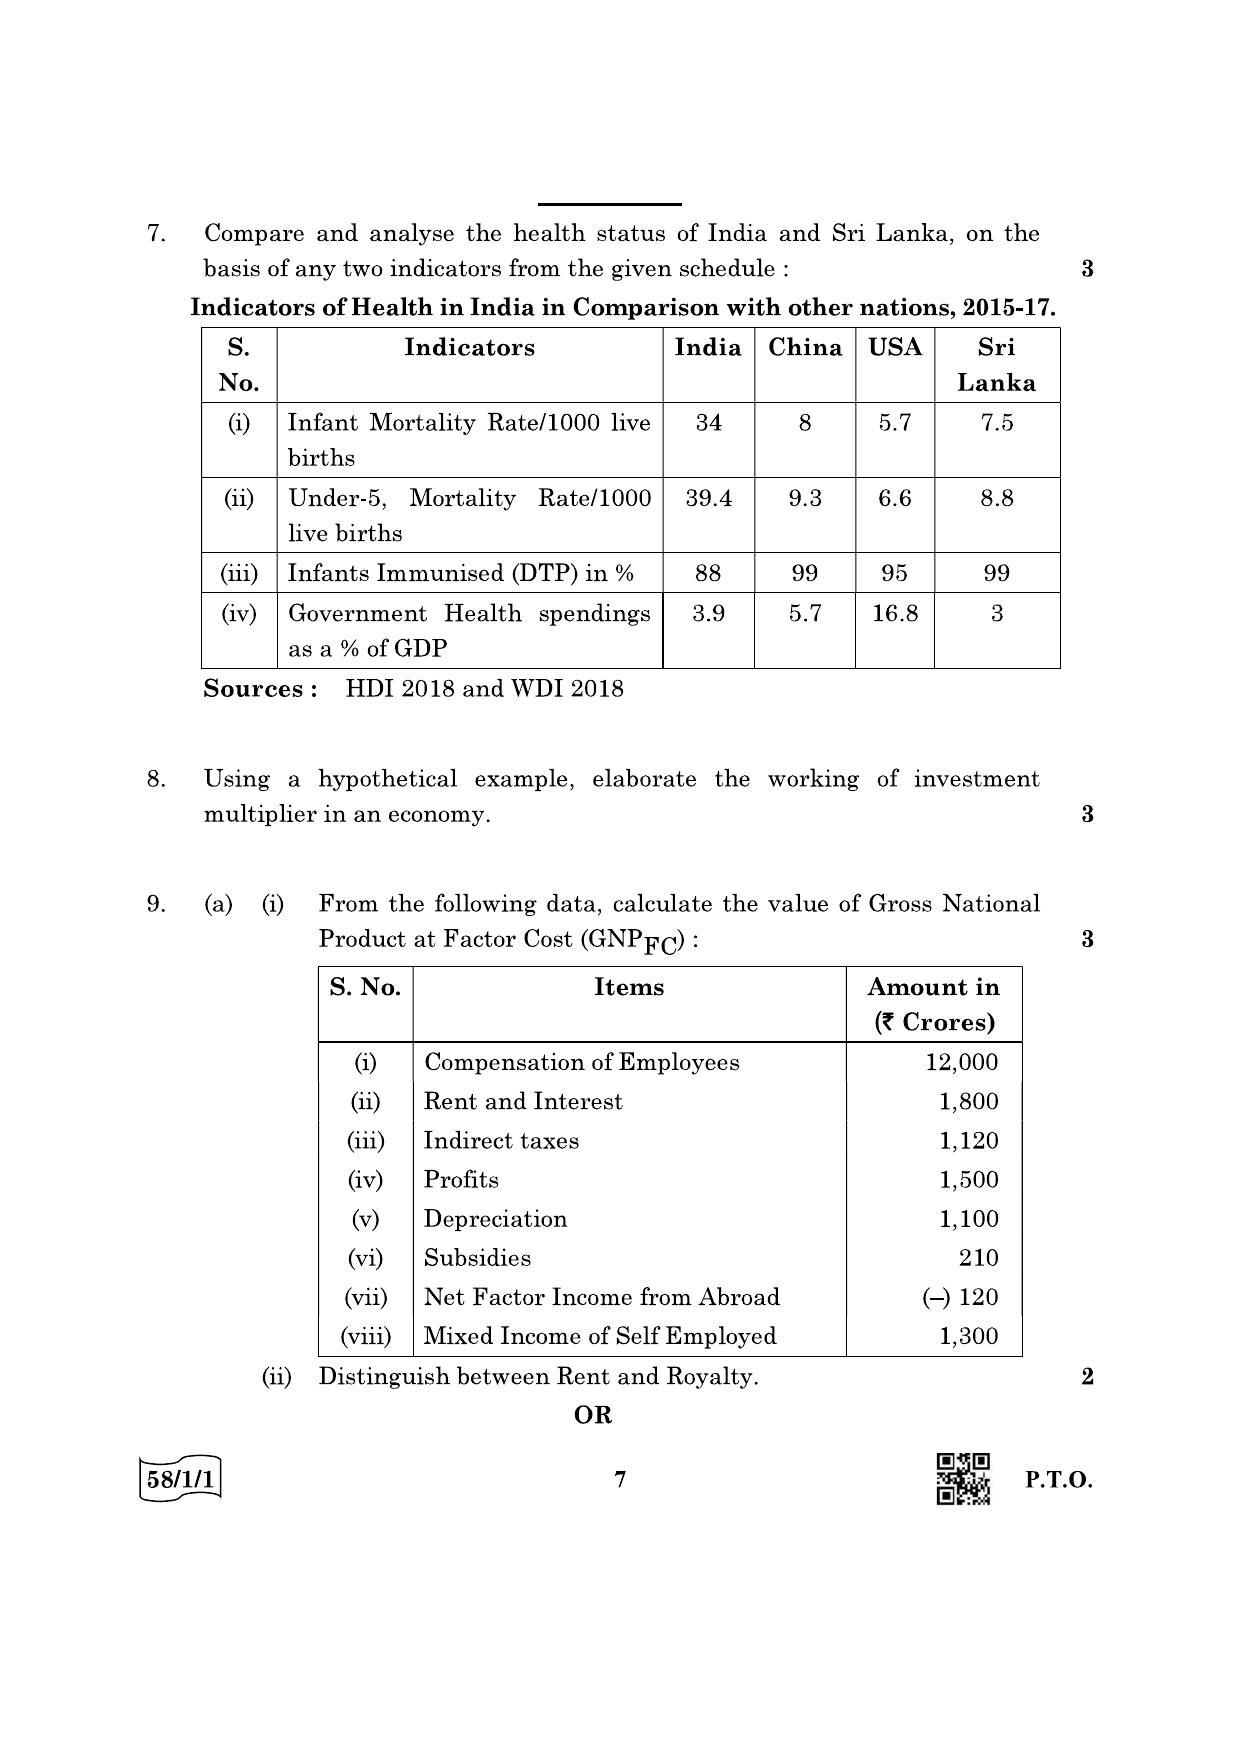 CBSE Class 12 58-1-1 Economics 2022 Question Paper - Page 7